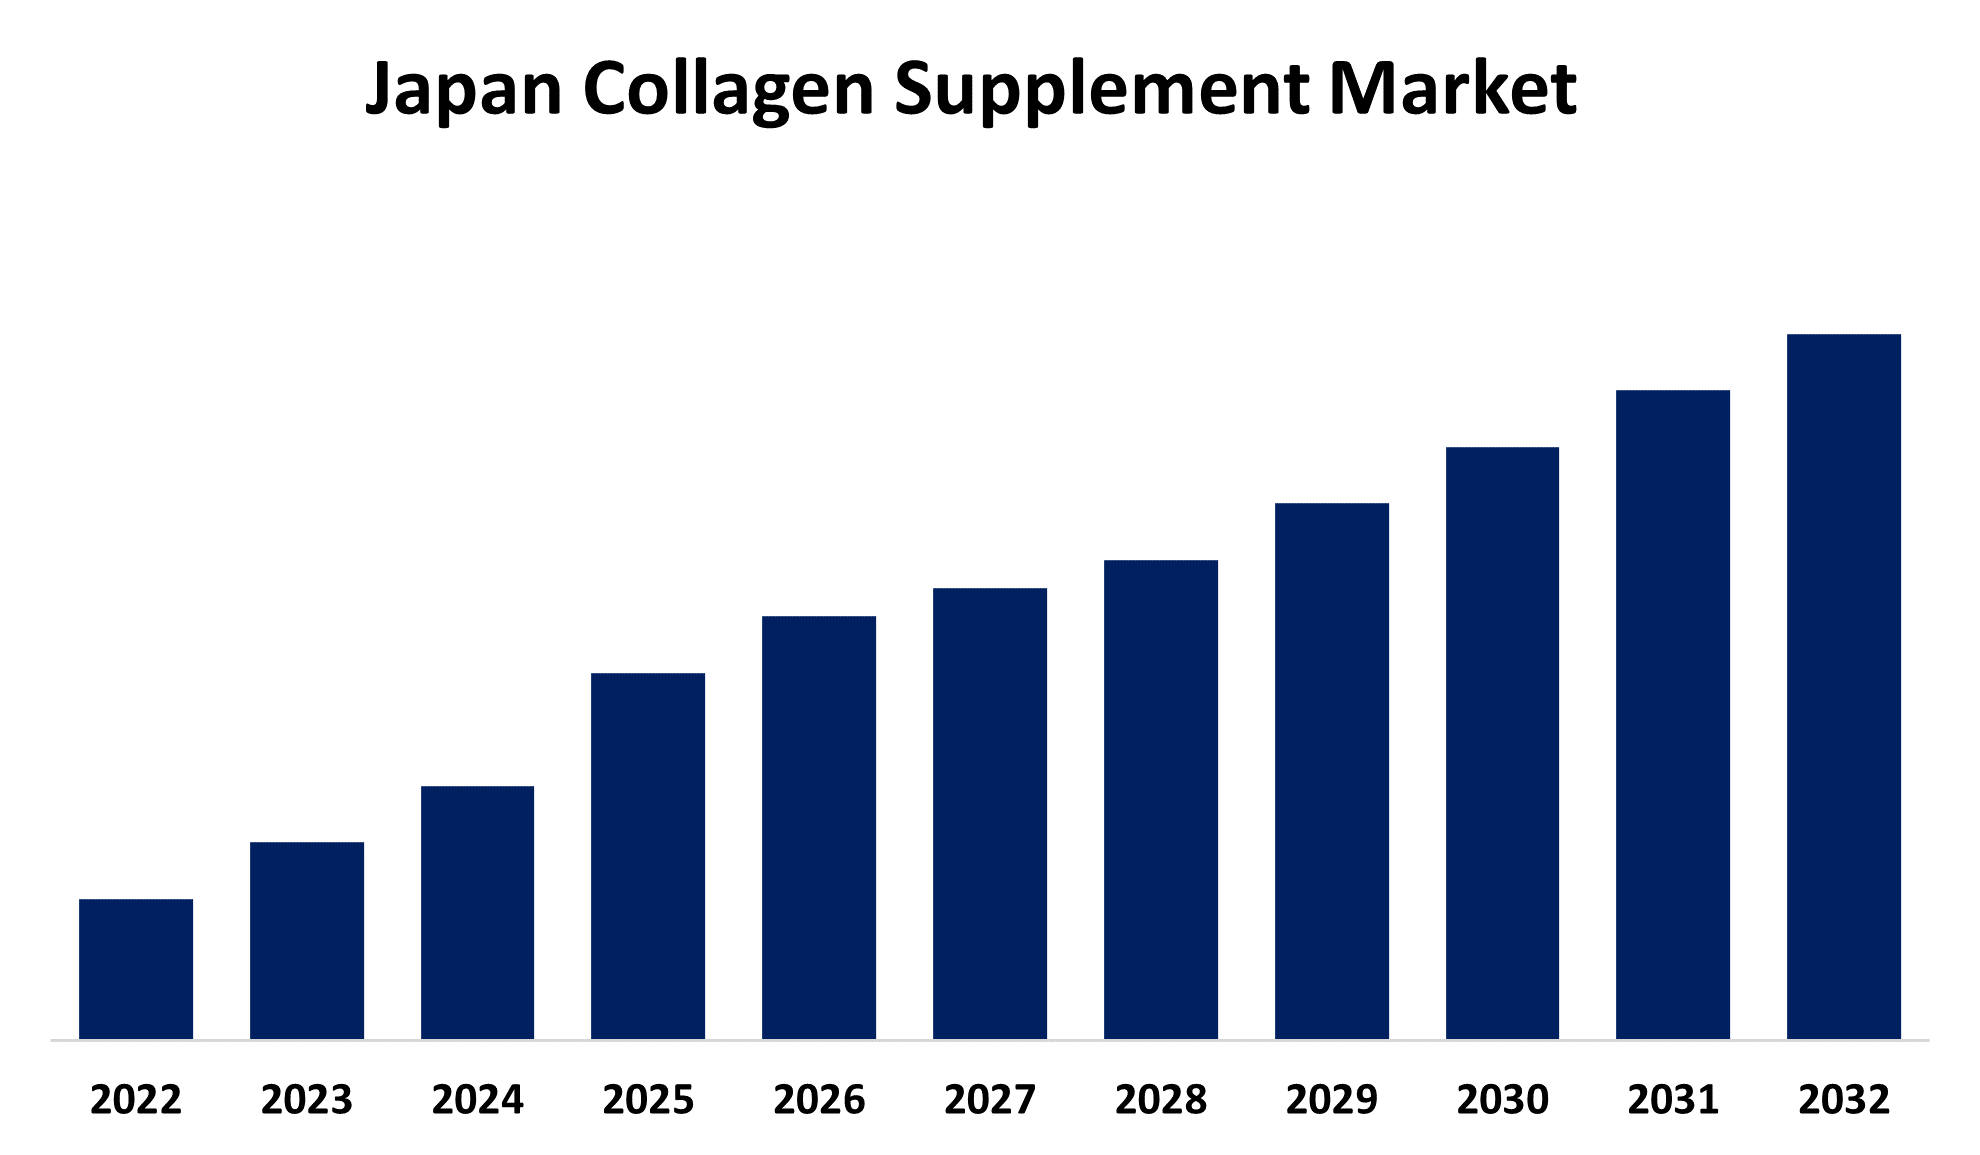 Japan Collagen Supplement Market